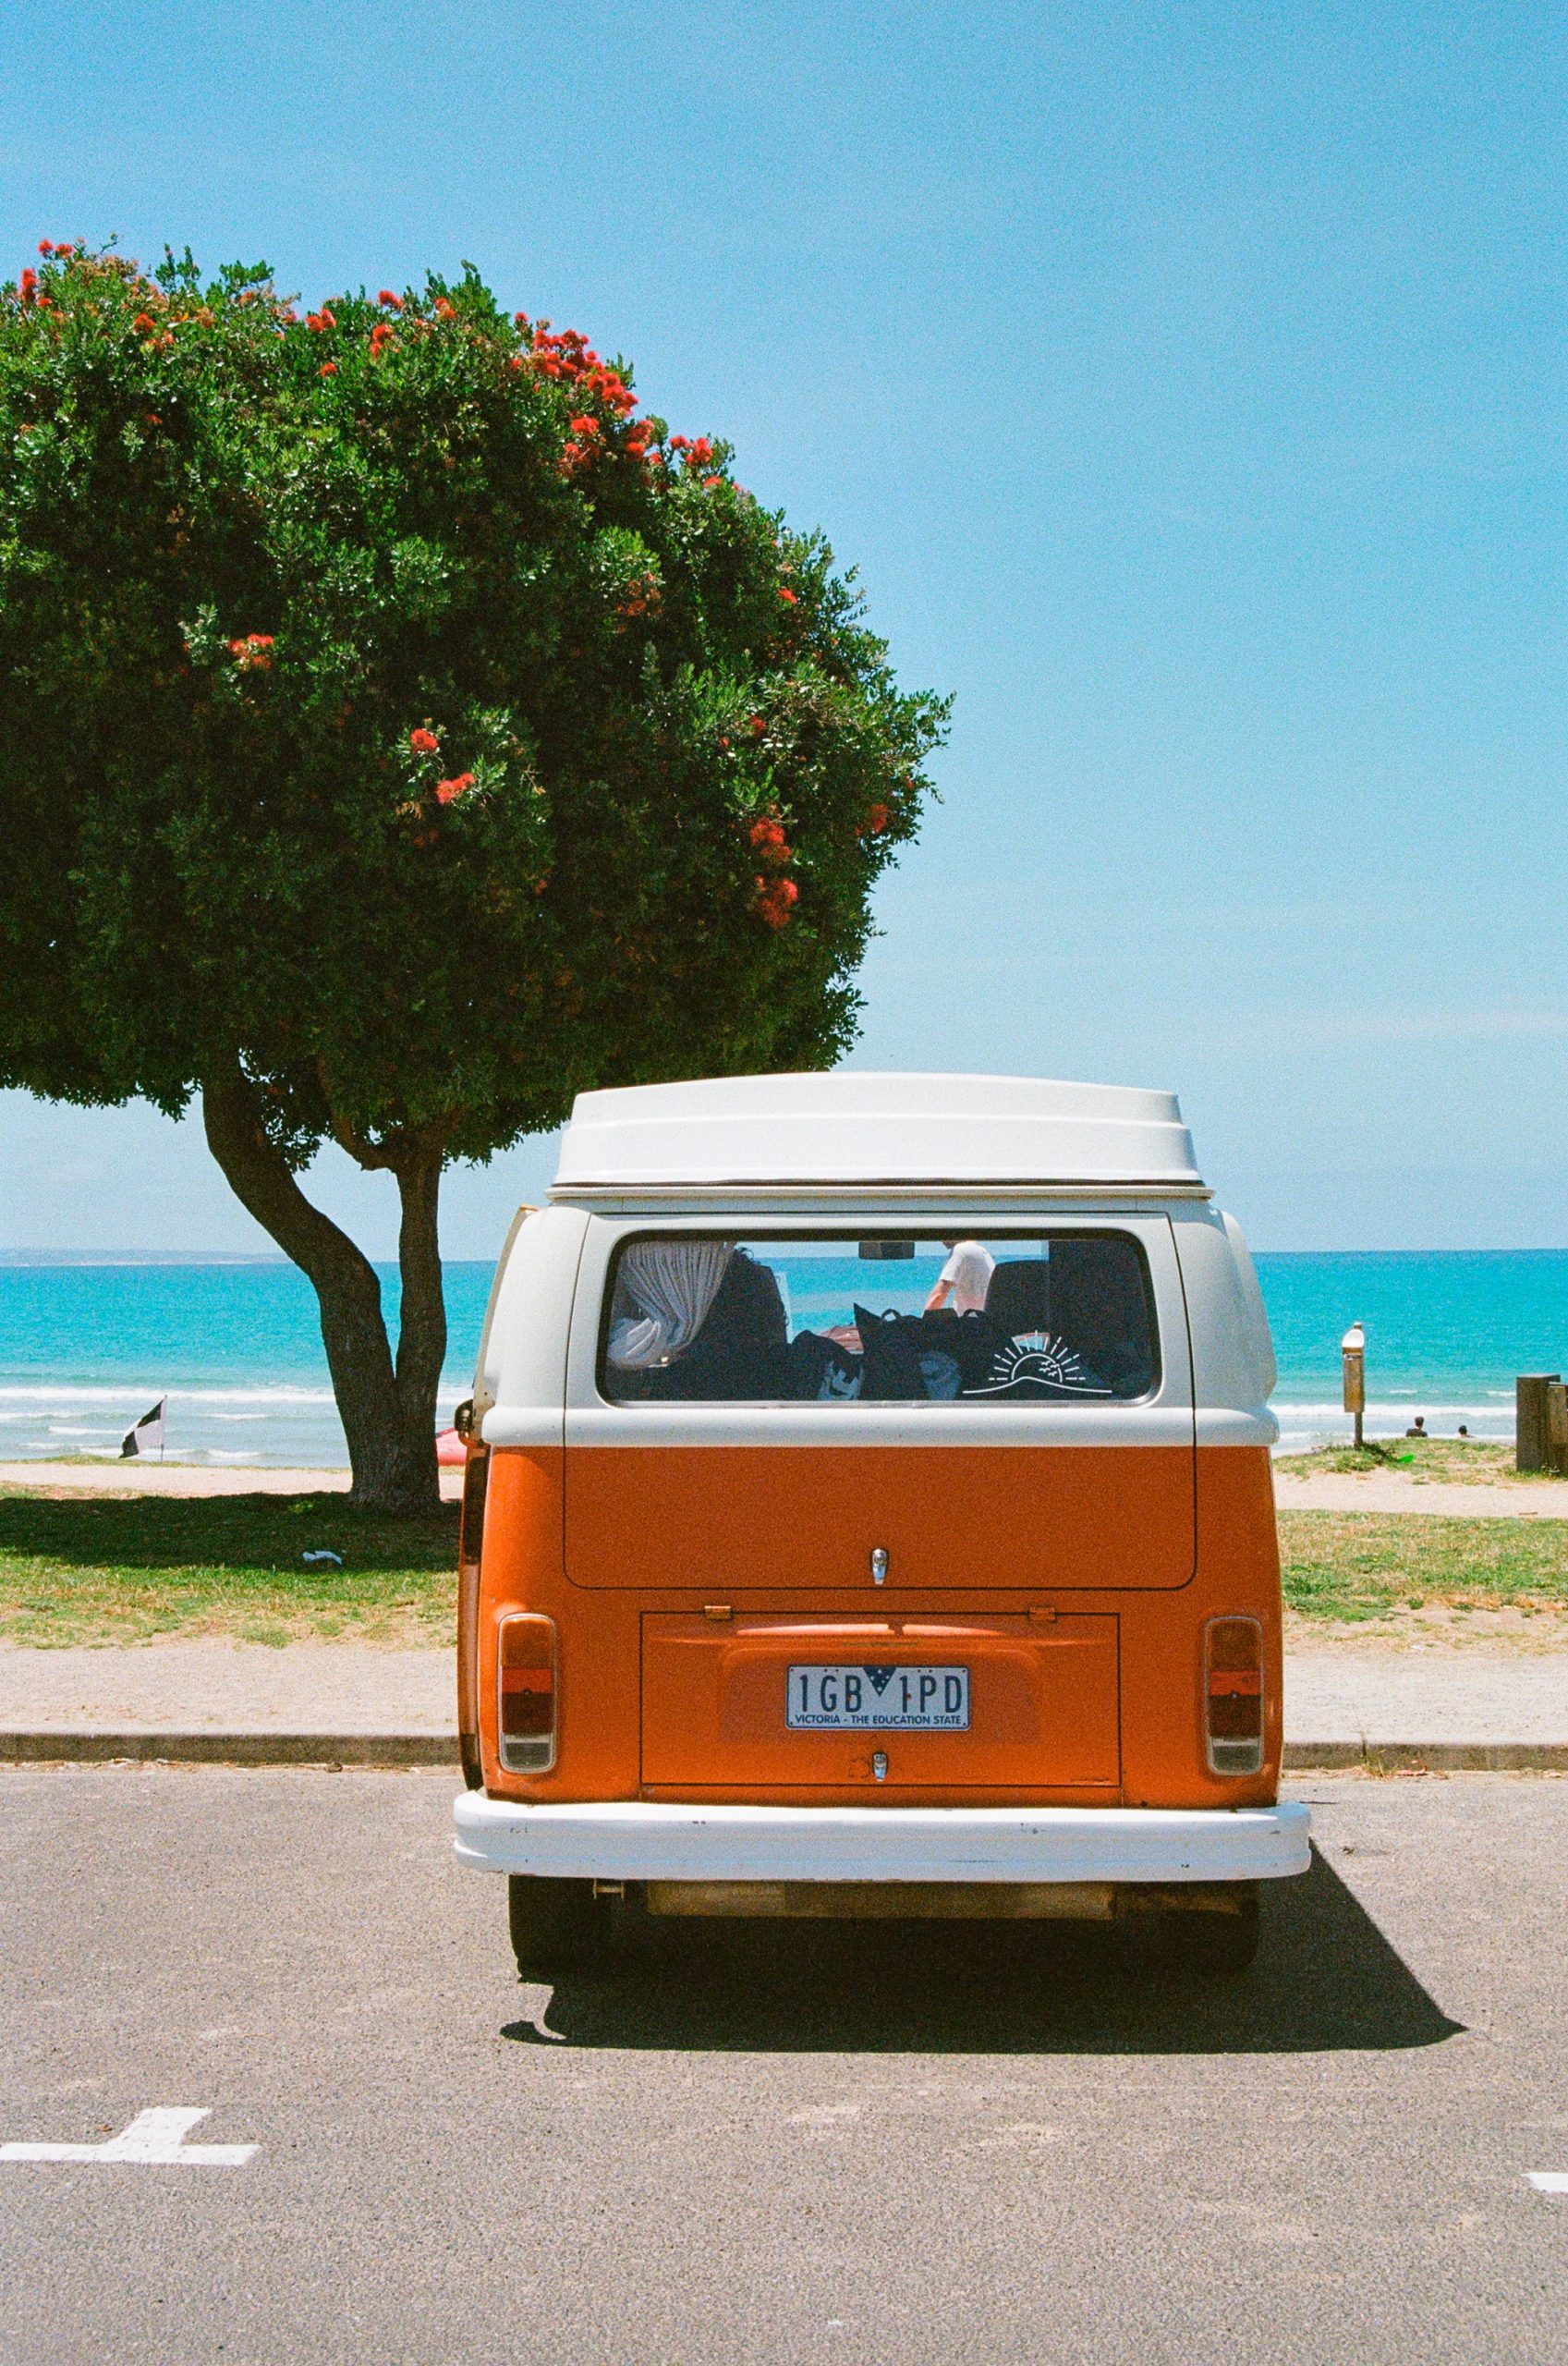 Image of van in front of a beach